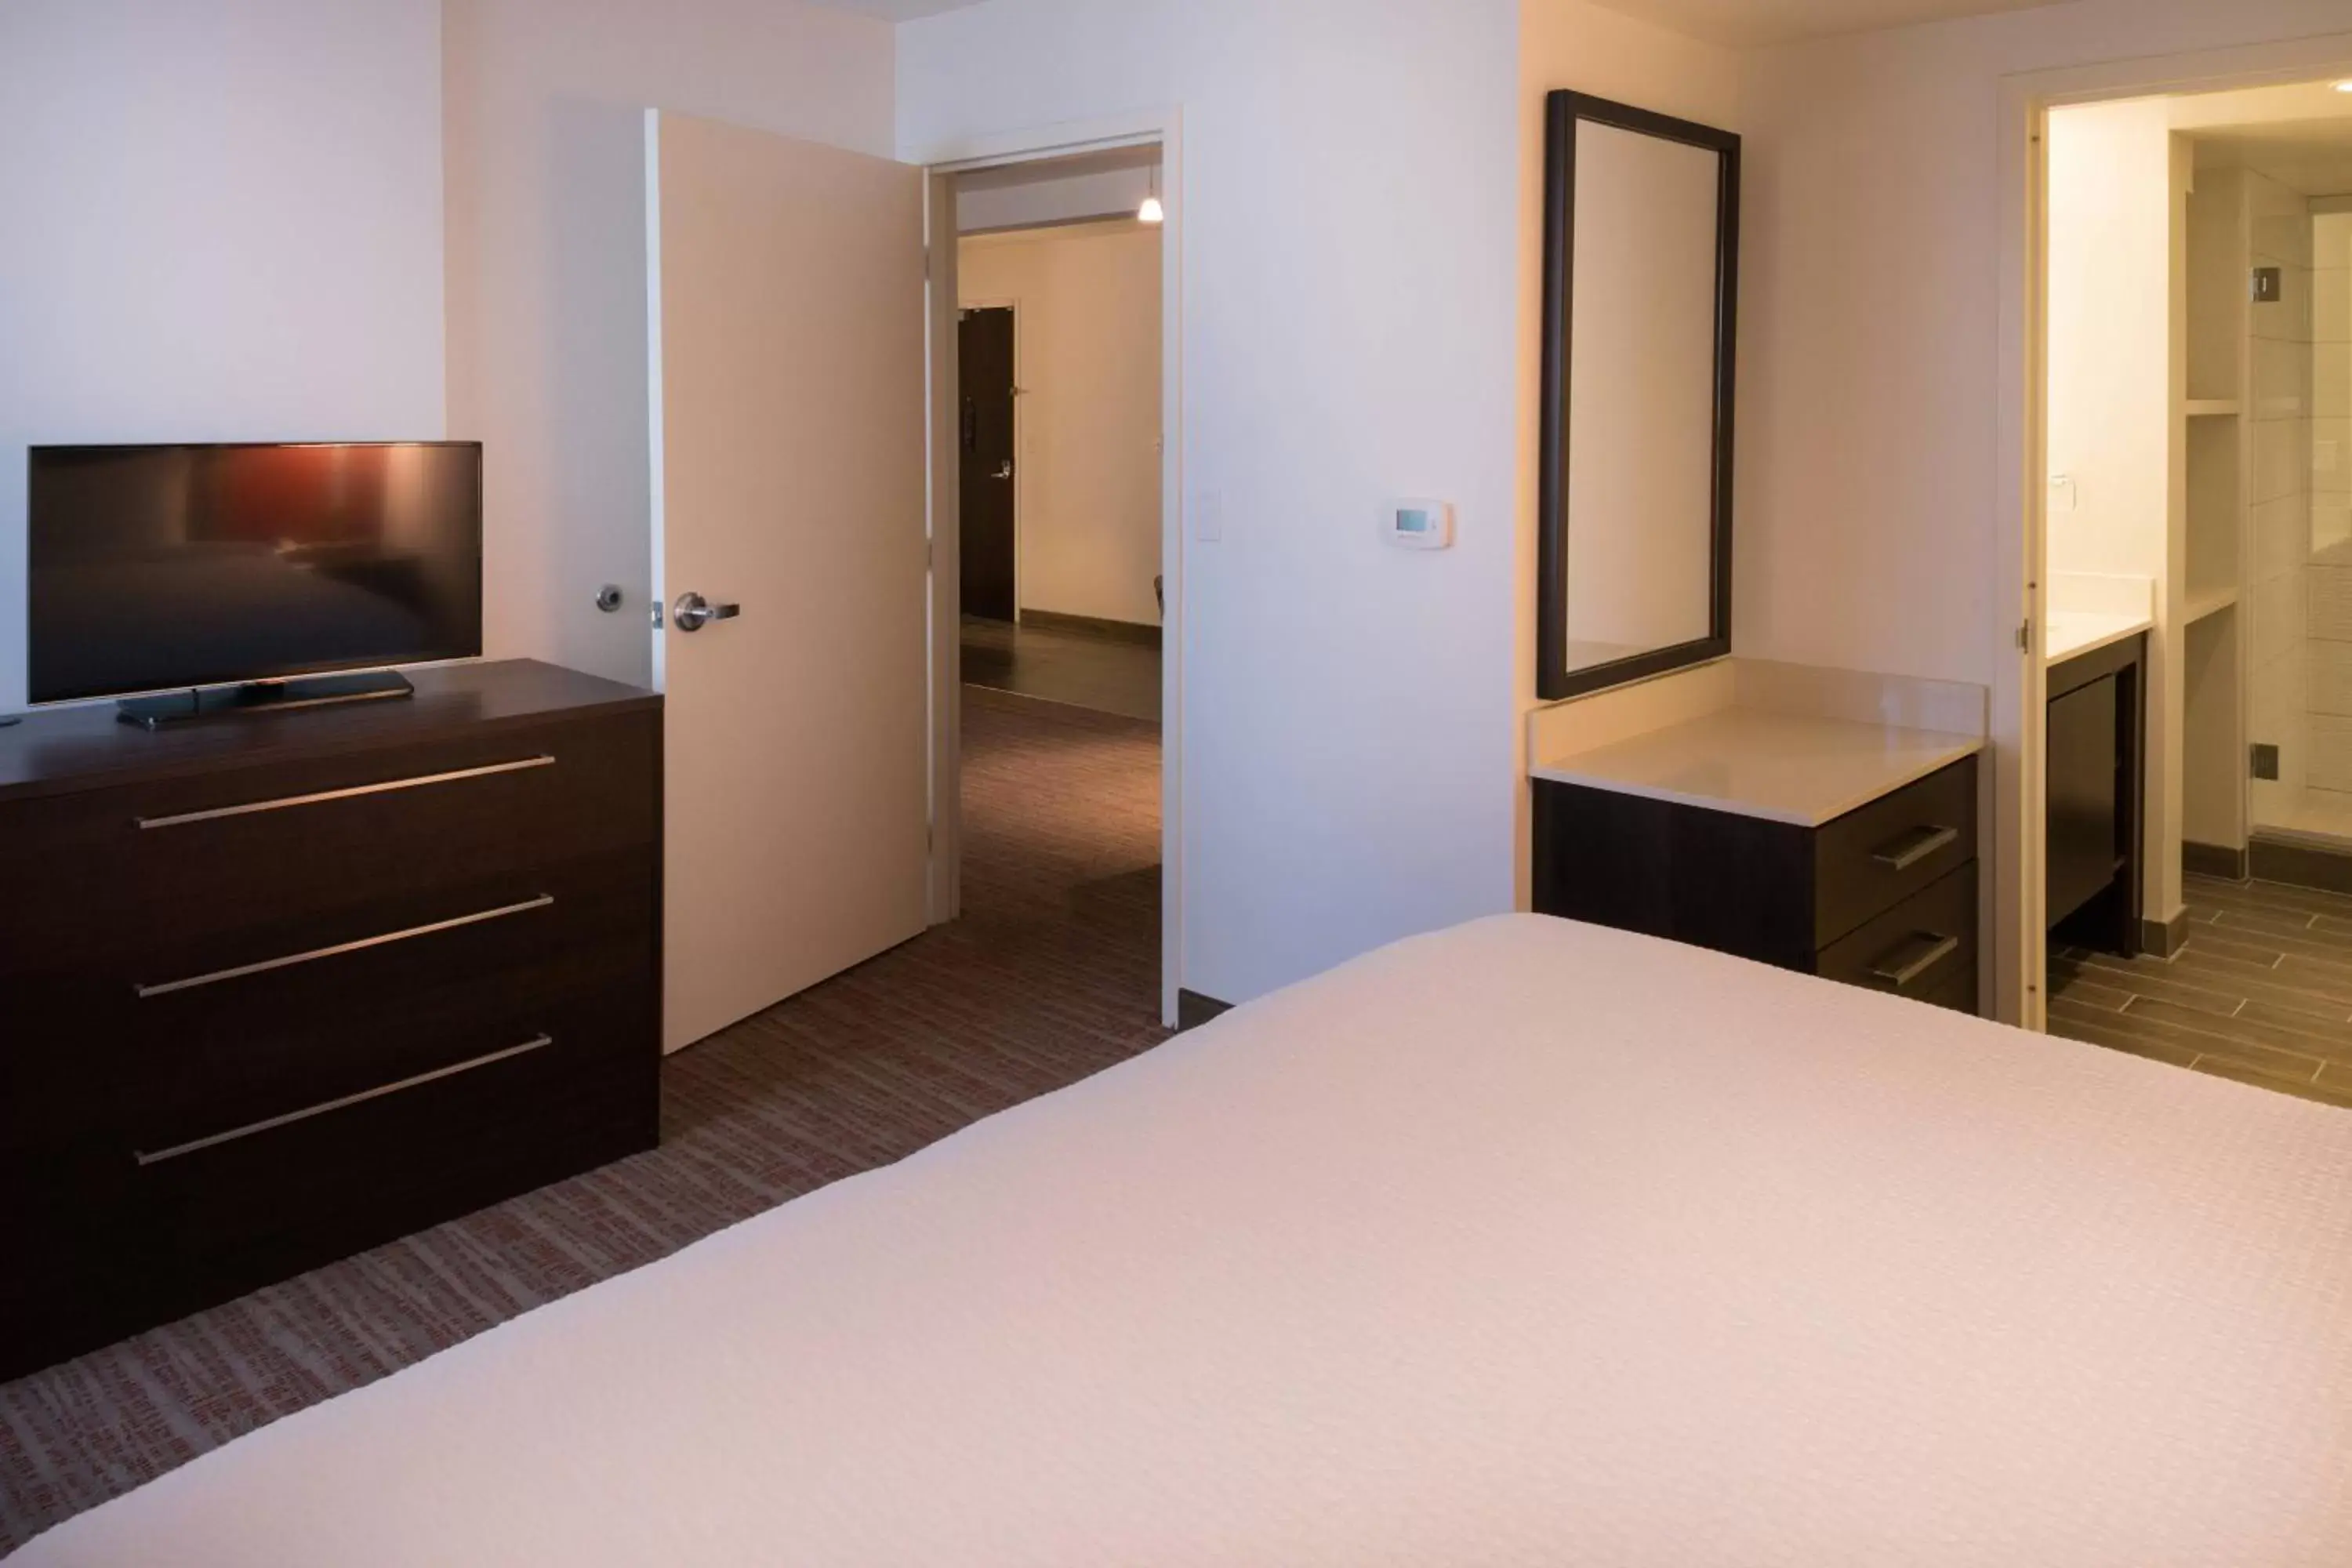 Bedroom, TV/Entertainment Center in Residence Inn by Marriott Palo Alto Menlo Park